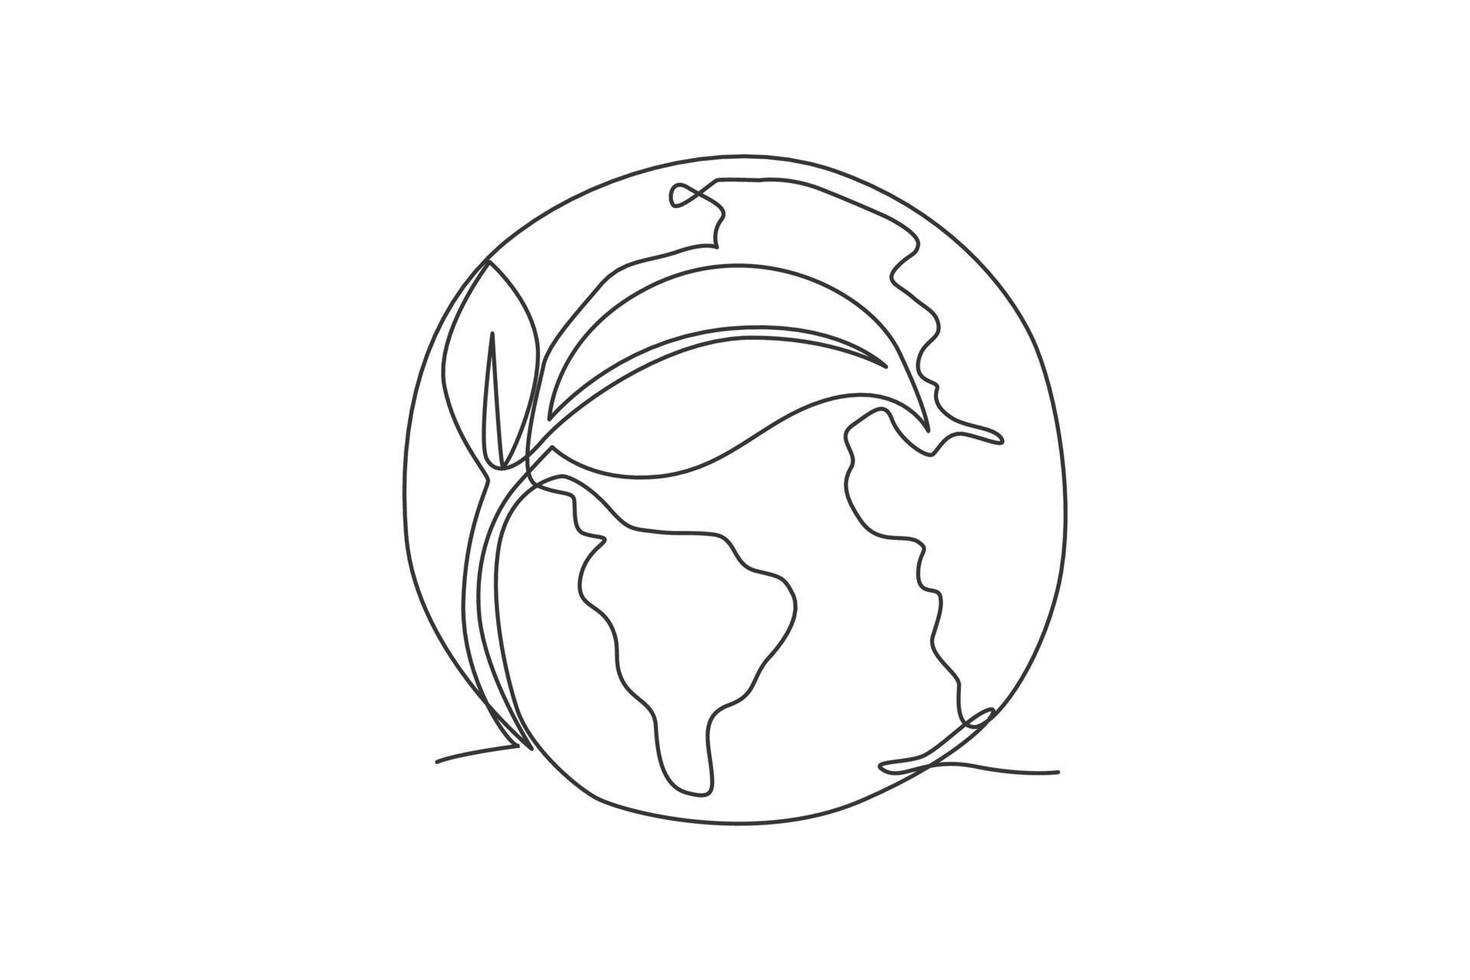 grönt blad på jordklotet. enda kontinuerlig linje världen naturlig global karta grafisk ikon. enkel enradig doodle för save earth -koncept. isolerad vektor illustration minimalistisk design på vit bakgrund